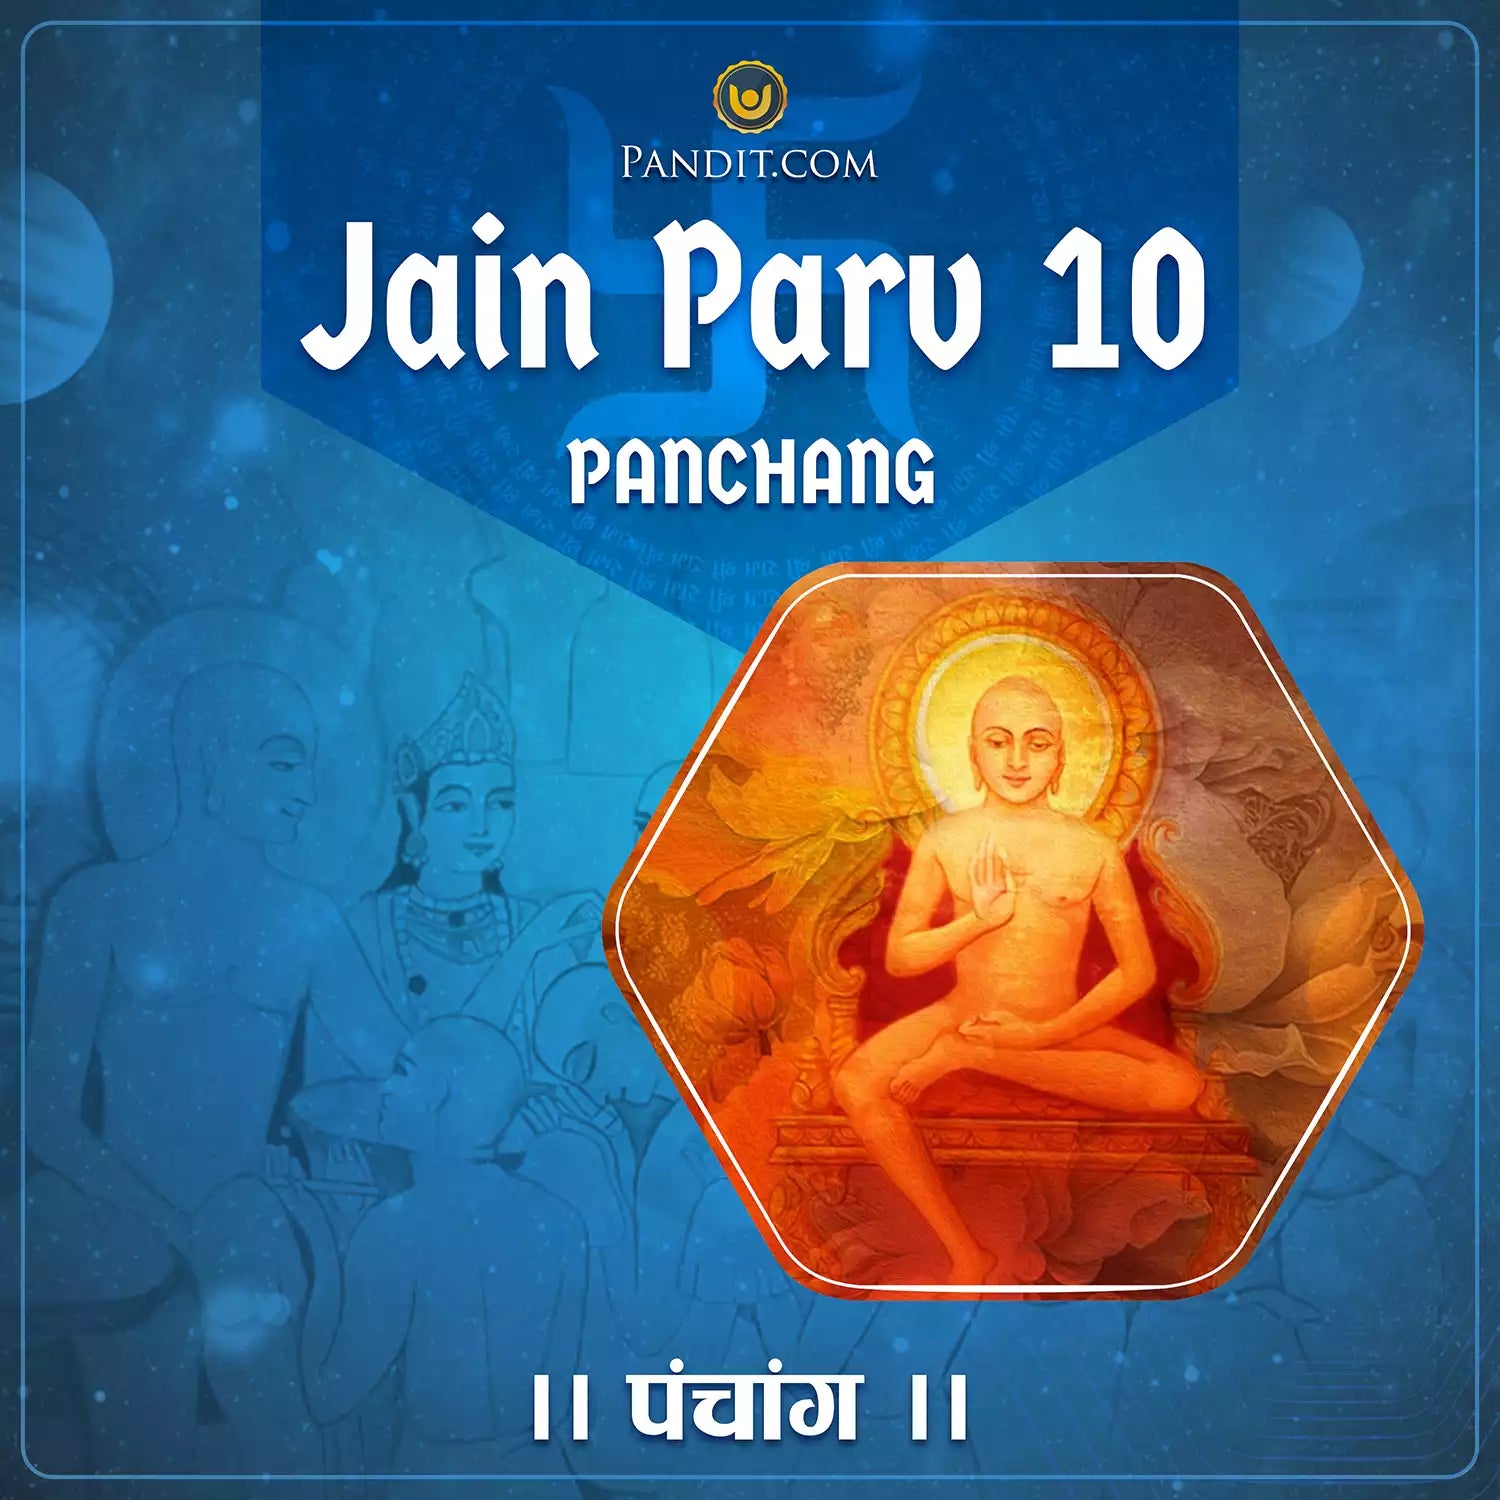 Jain Parv 10